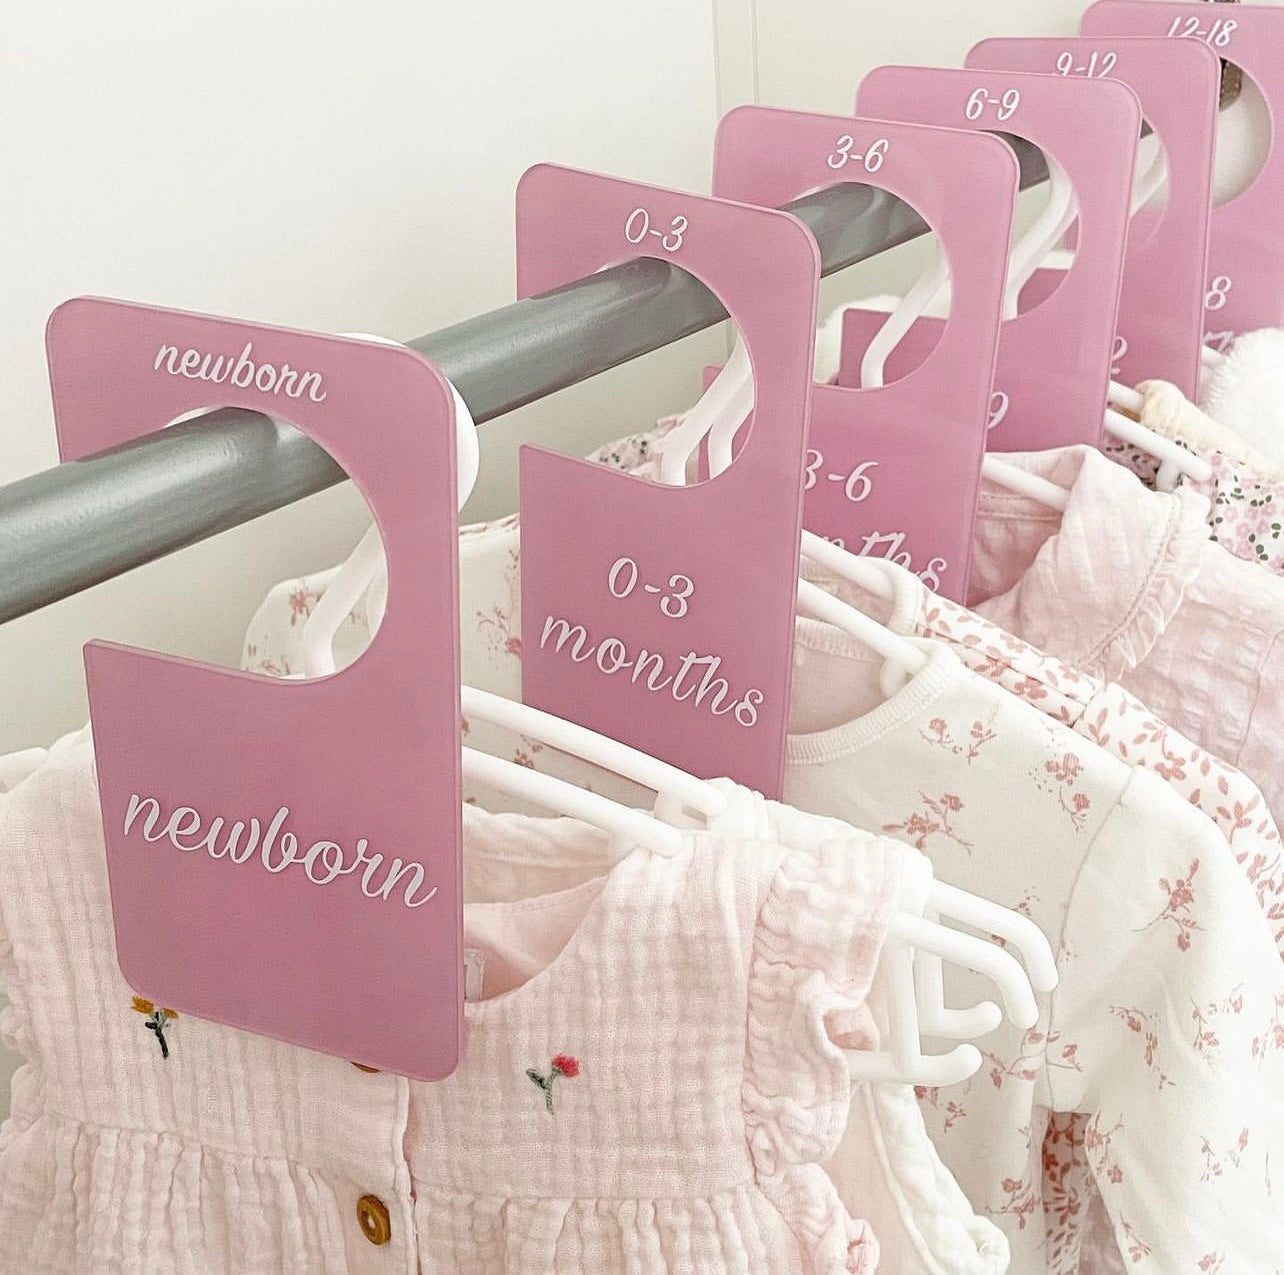 Baby clothing / wardrobe divider set